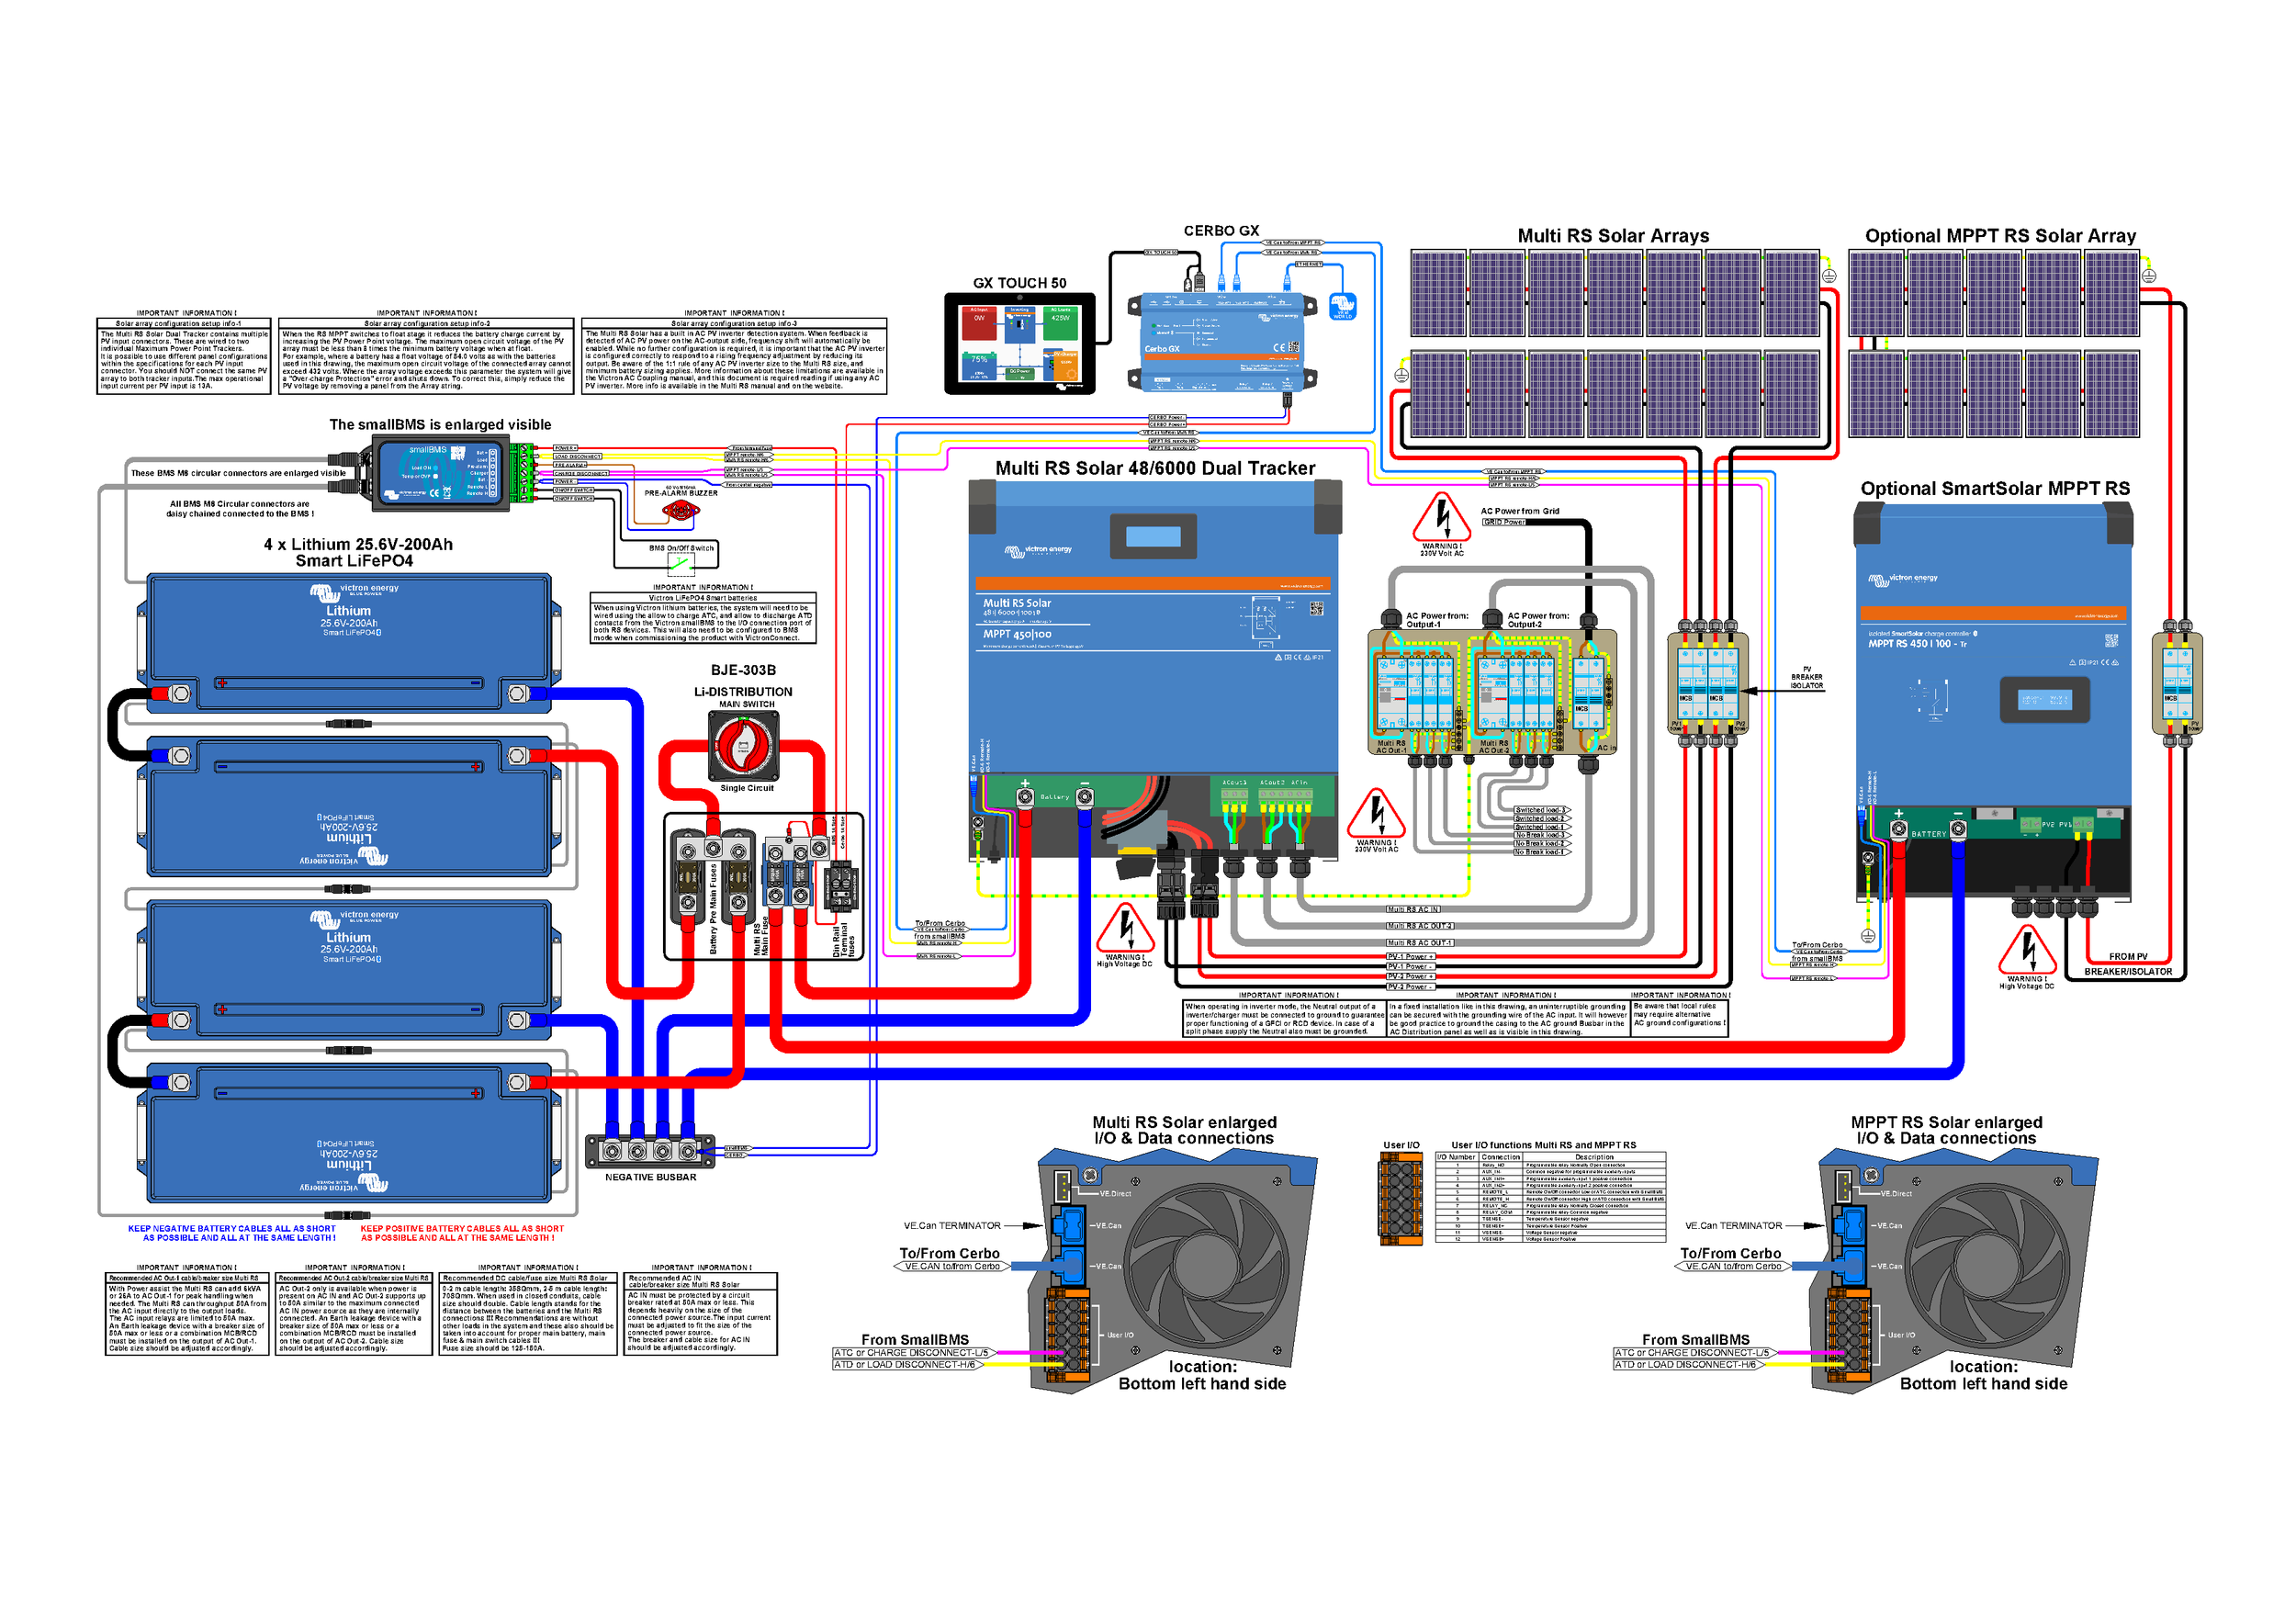 Diagrama completo de cableado de Multi RS Solar